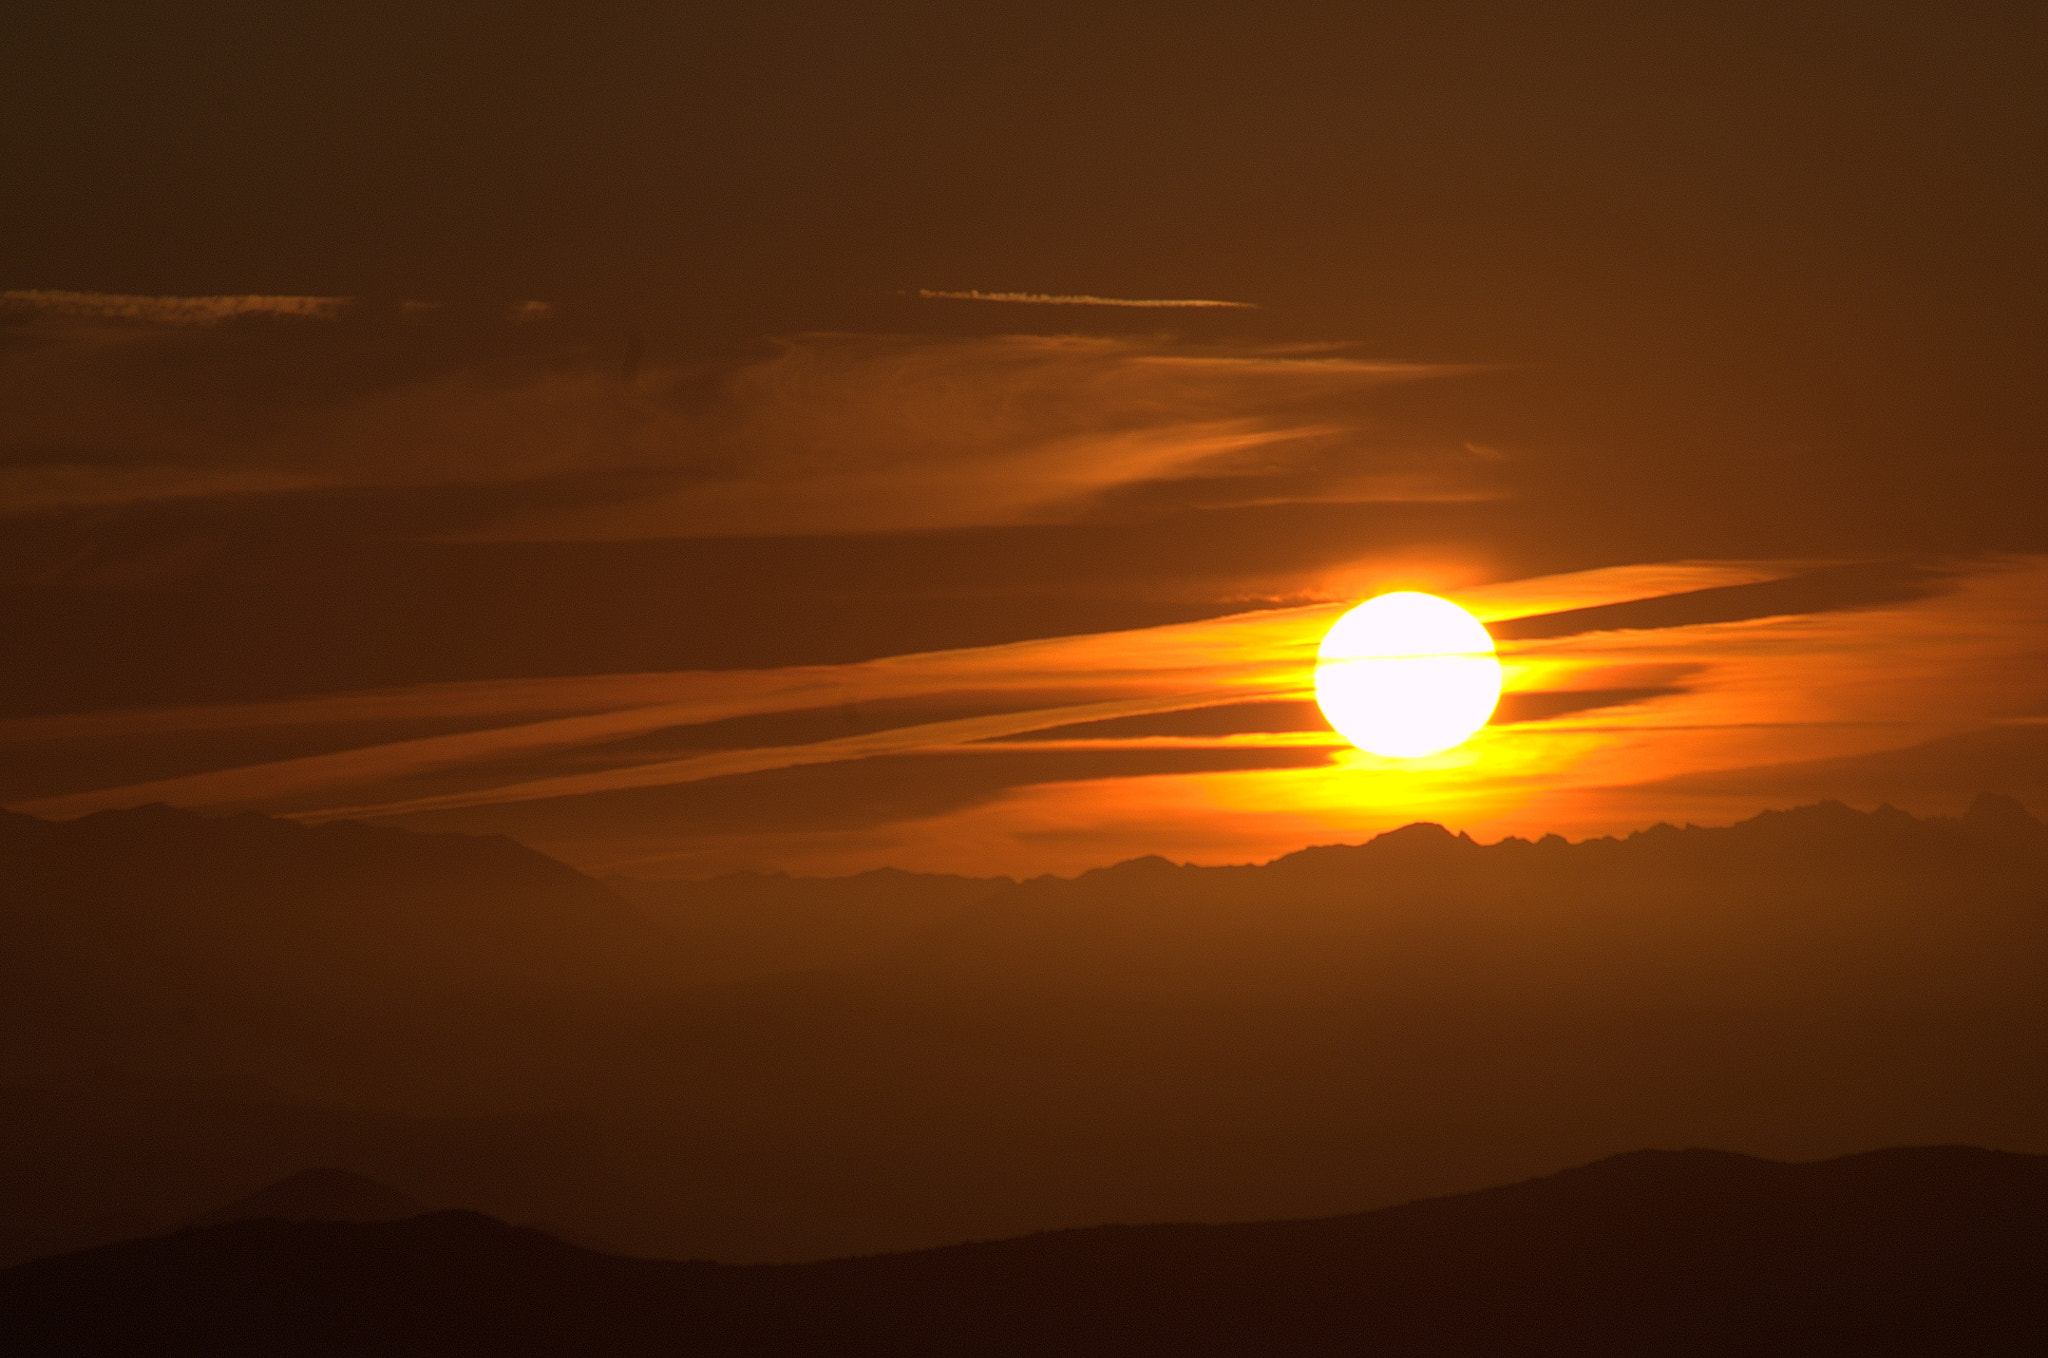 Nikon D300 sample photo. Sunset since mont ventoux photography